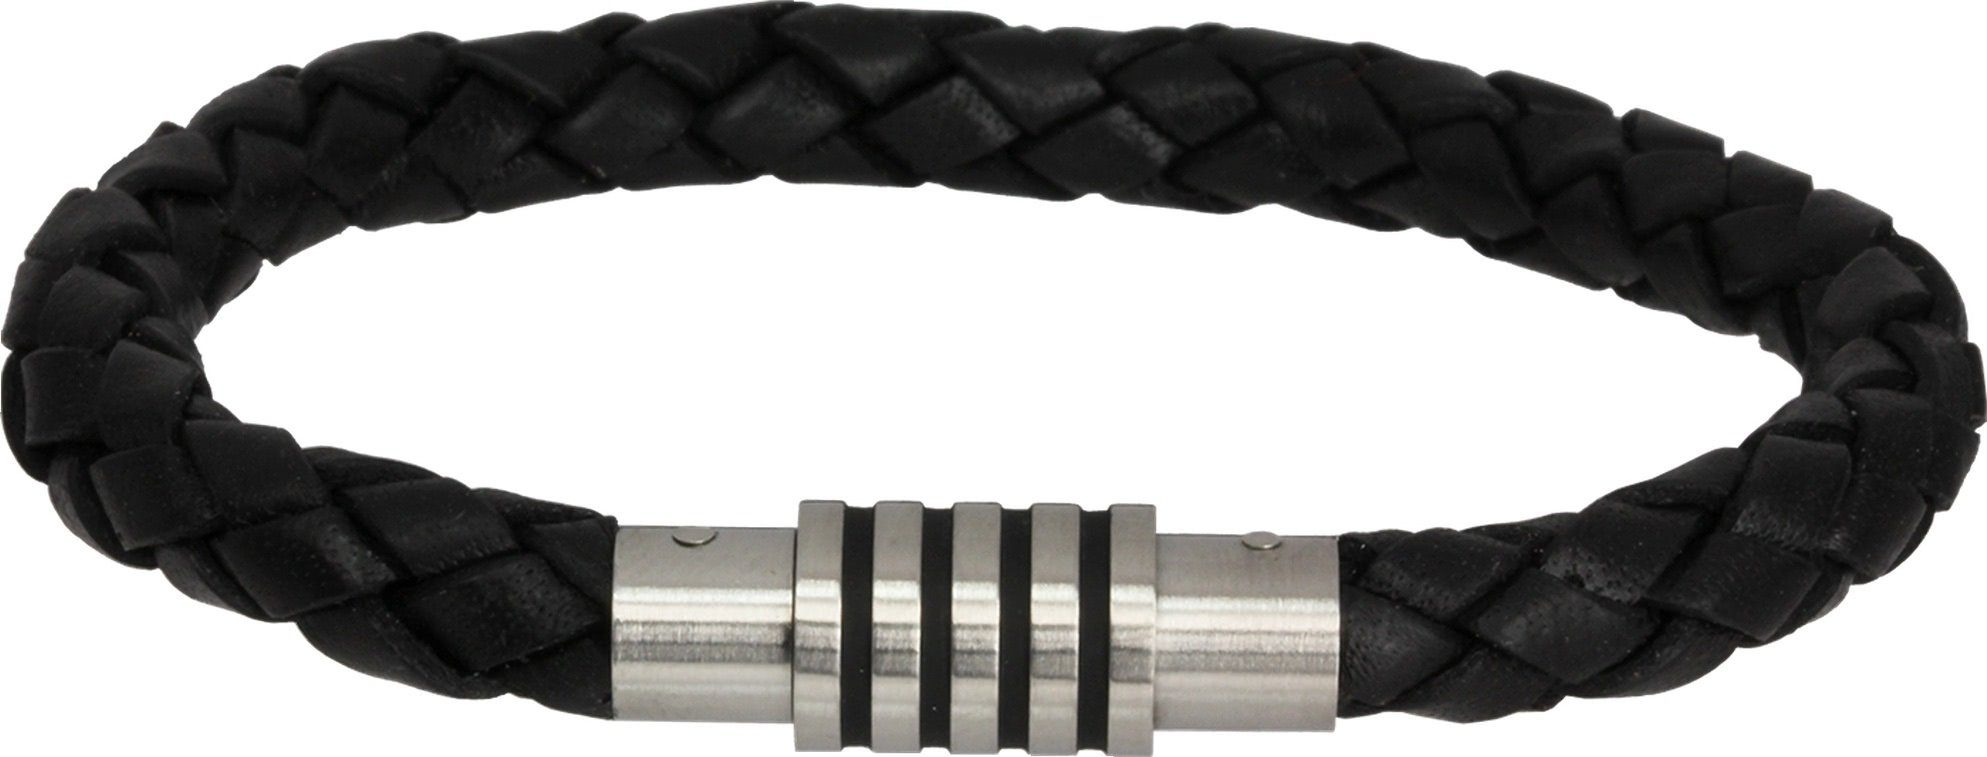 Amello Edelstahlarmband Amello Armband schwarz Herren Armschmuck (Armband), Herren Armband ca. 19cm, Edelstahl (Stainless Steel), Farbe: schwarz